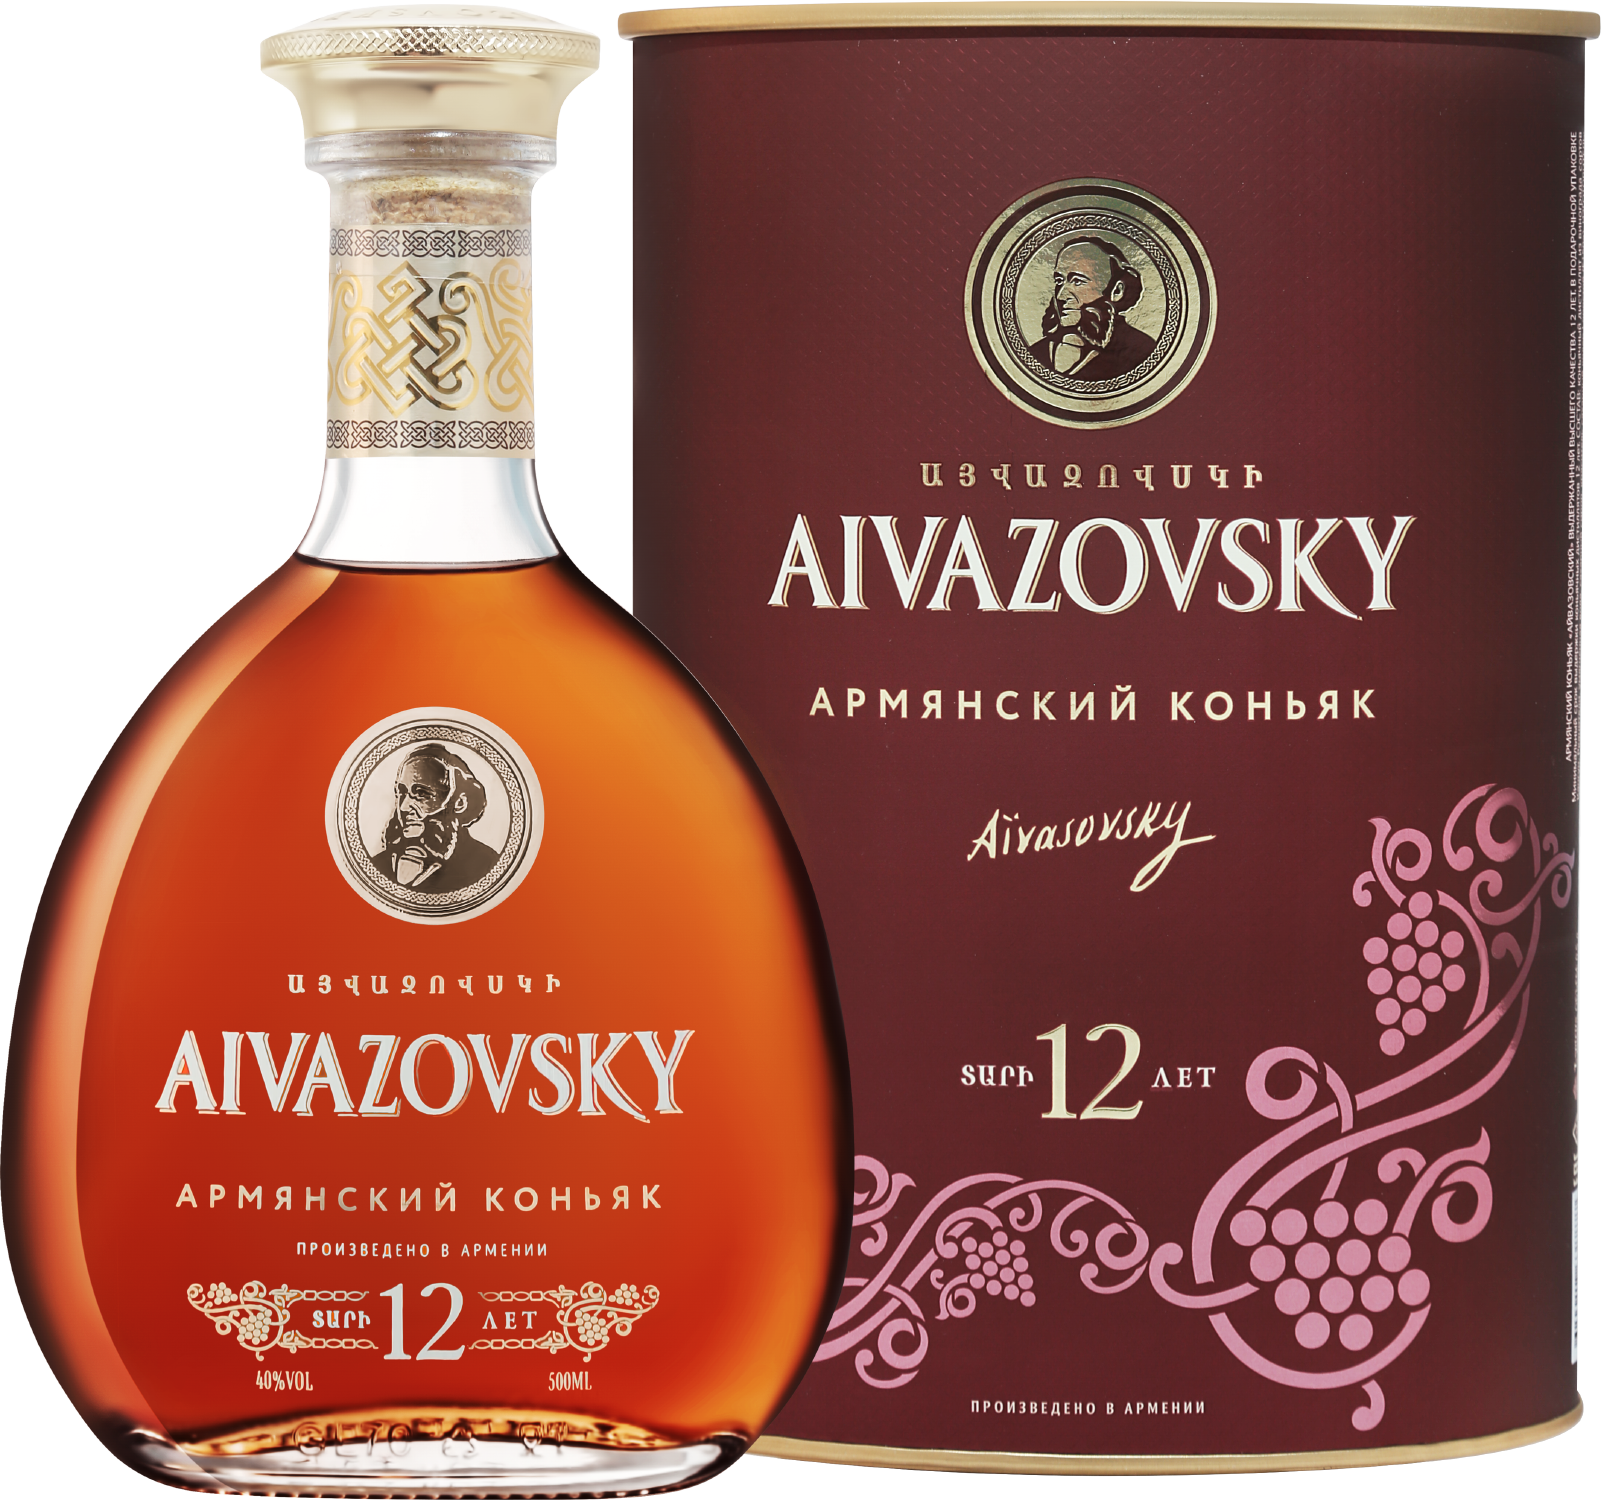 aivazovsky armenian brandy 5 y o Aivazovsky Old Armenian Brandy 12 Y.O. (gift box)